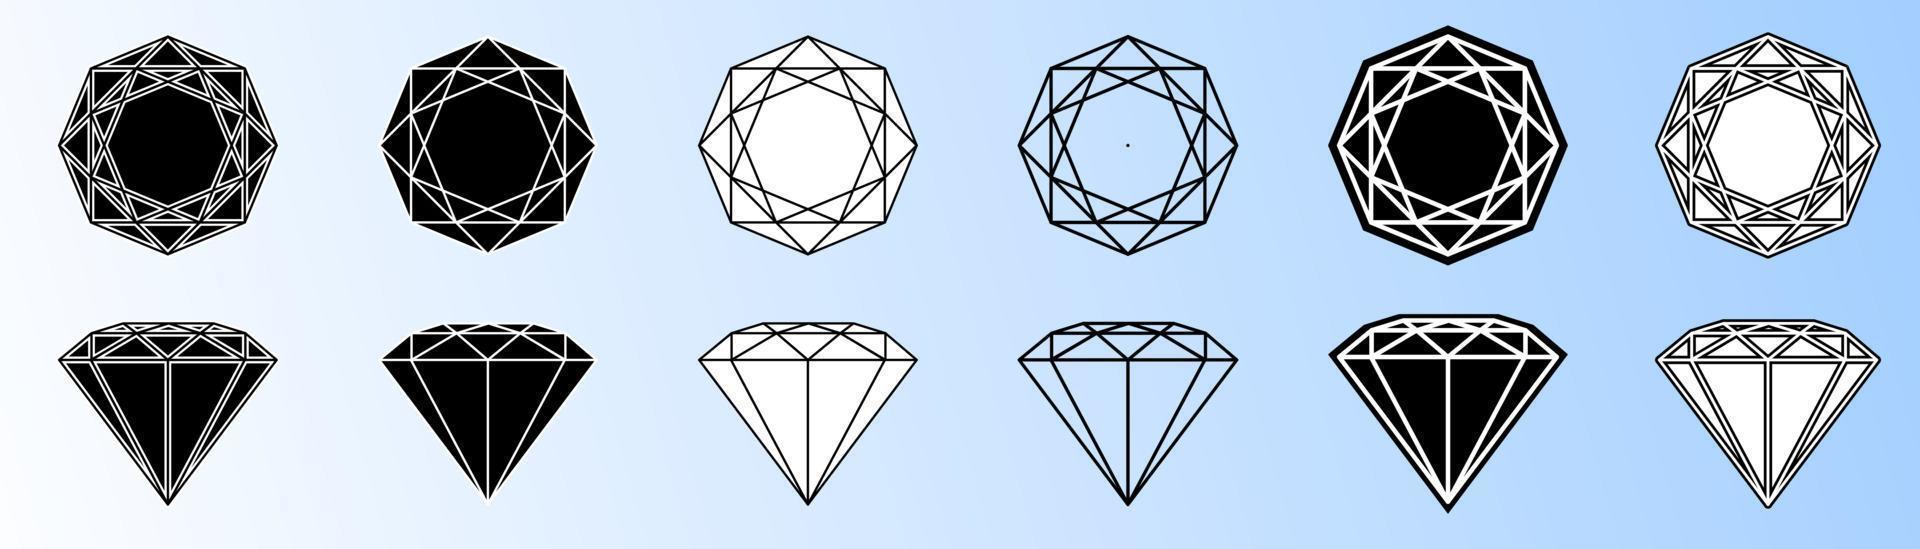 vários diamantes de silhueta em estilo preto e branco vetor